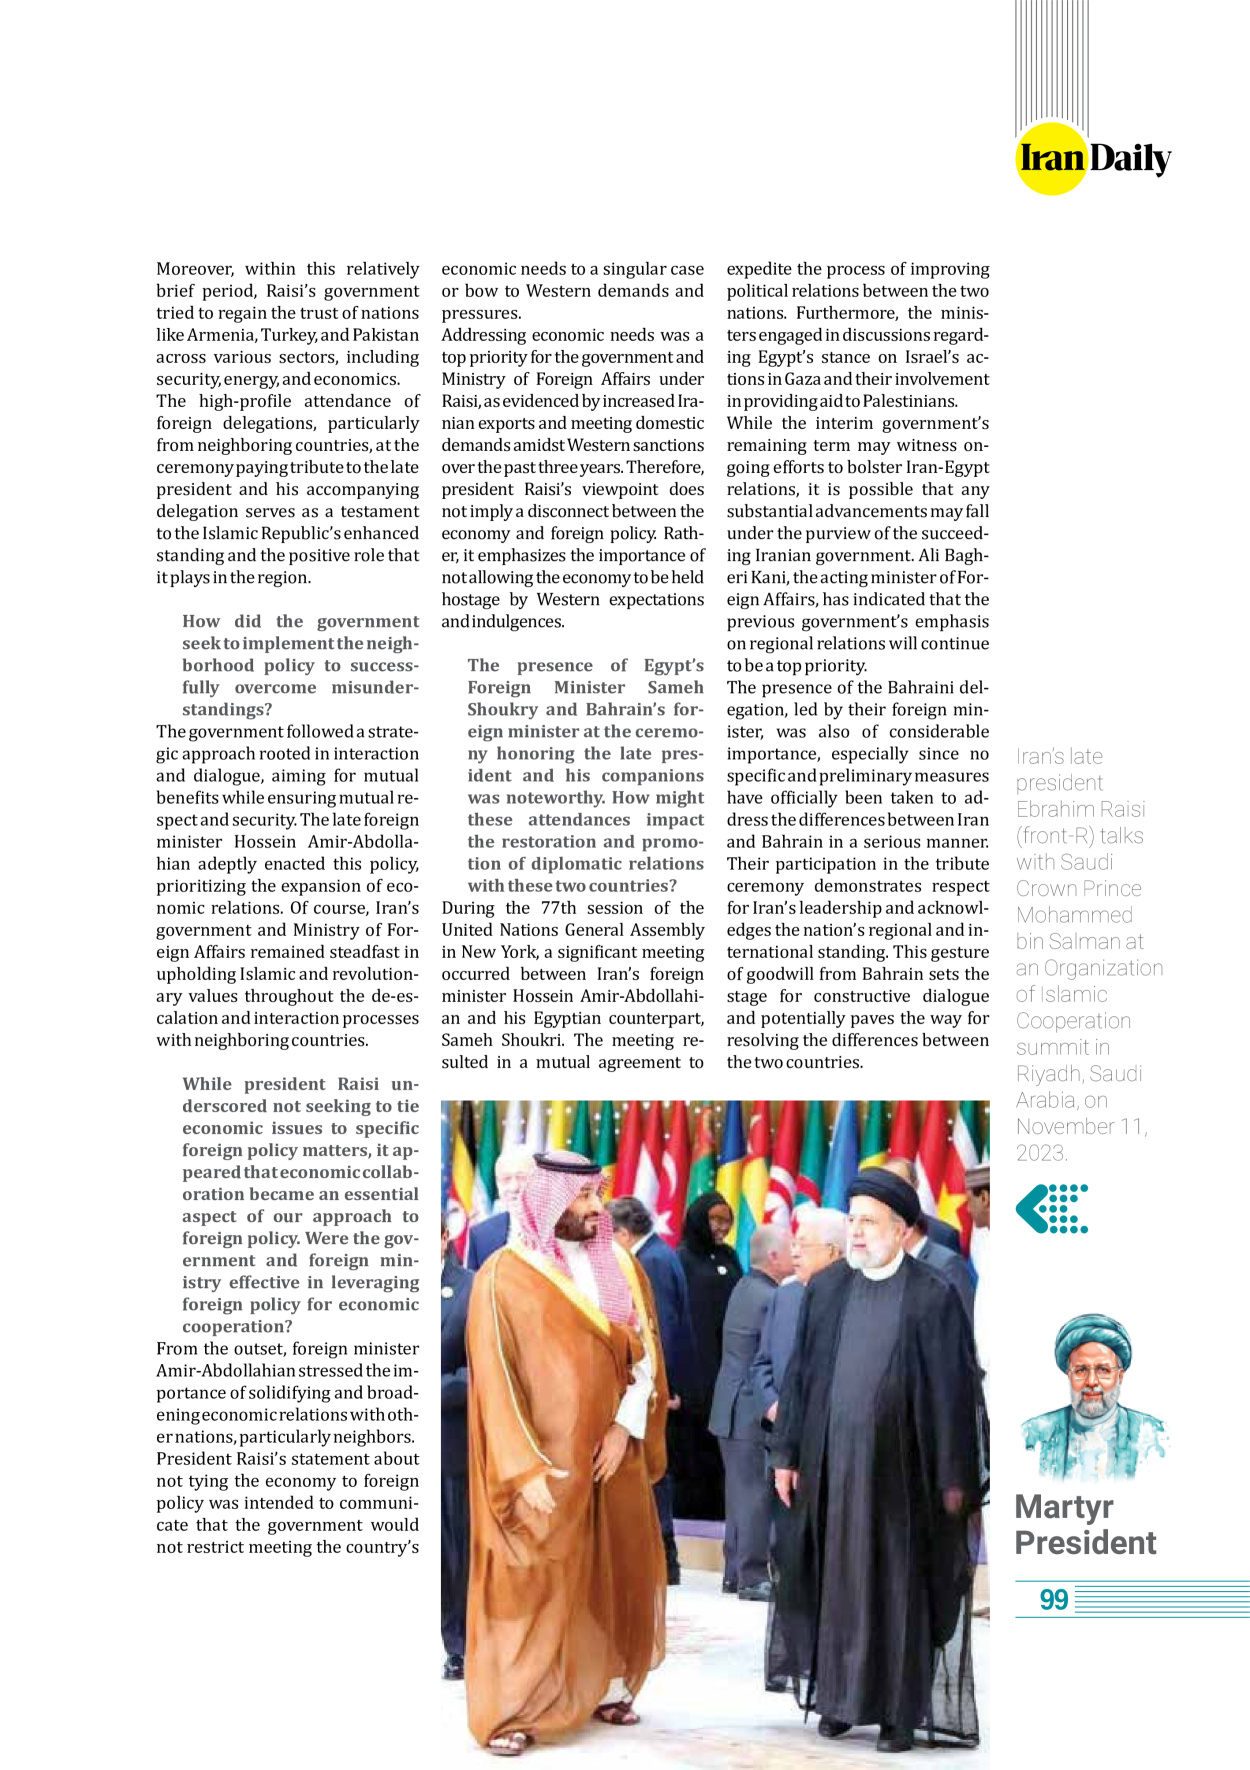 روزنامه ایران - ویژه نامه وِزه نامه چهلم شهید رییسی( انگلیسی) - ۱۷ تیر ۱۴۰۳ - صفحه ۹۹